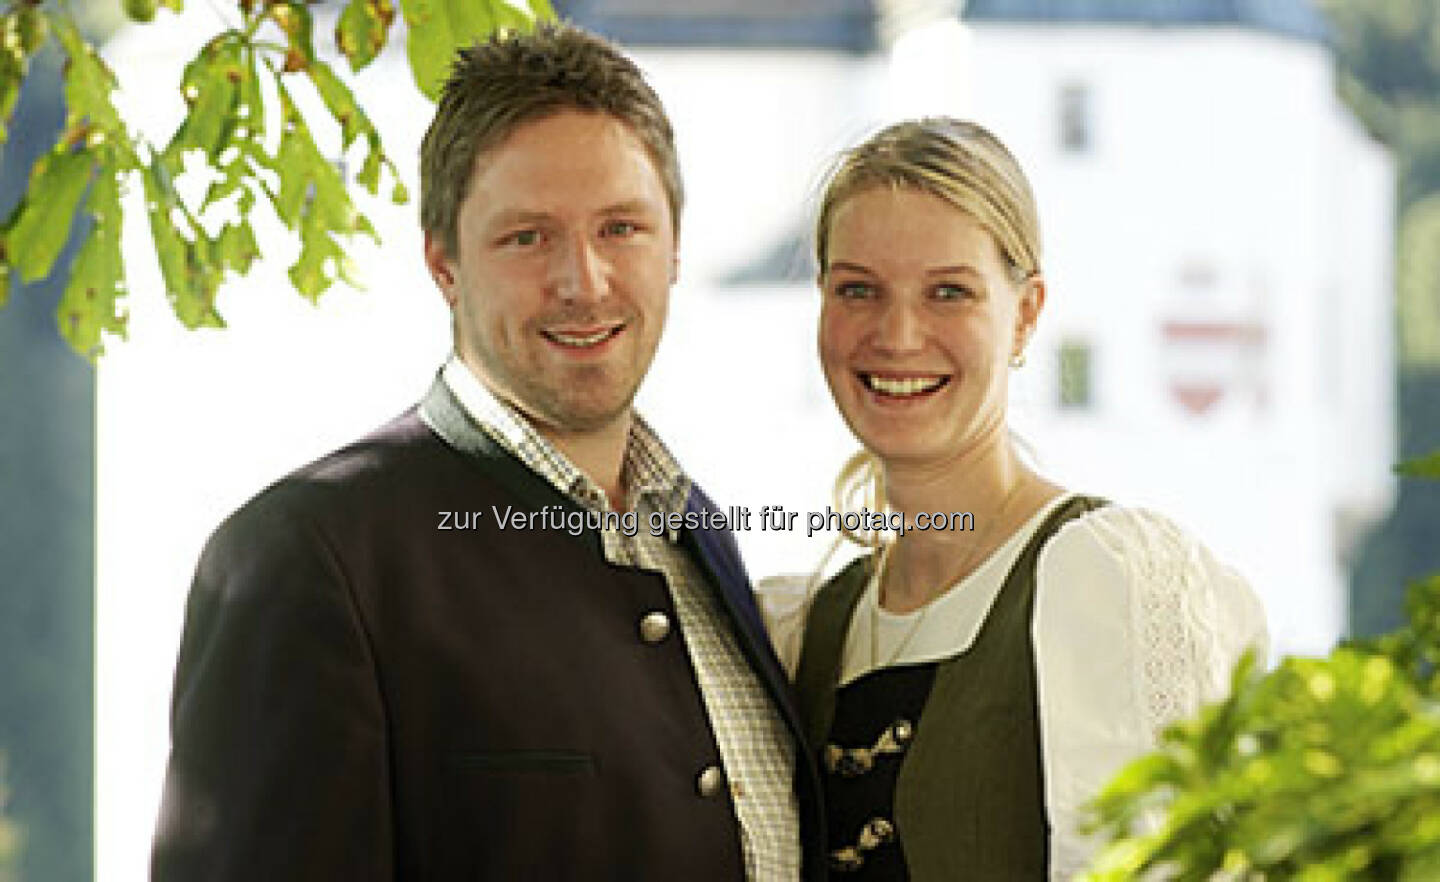 Thomas Radinger & Maria Radinger (Mariasteinerhof) : Mariasteinerhof und ncm verlängern erfolgreiche Zusammenarbeit : Fotocredit: Franz Baldauf